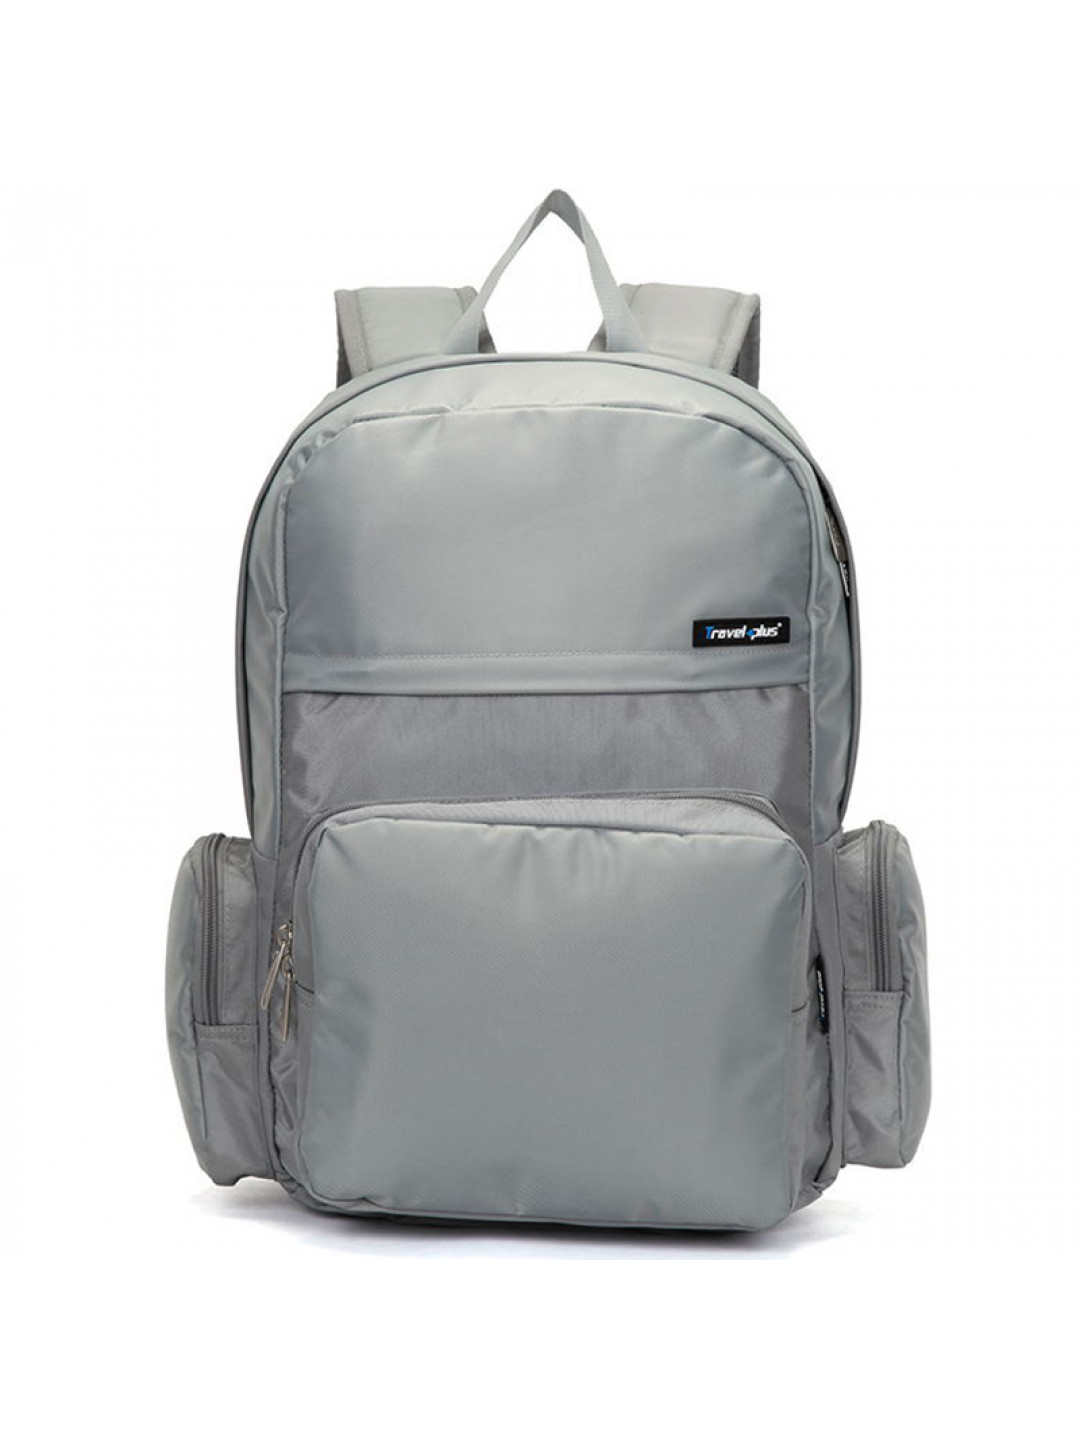 Školní a cestovní šedý batoh – Travel plus 0109